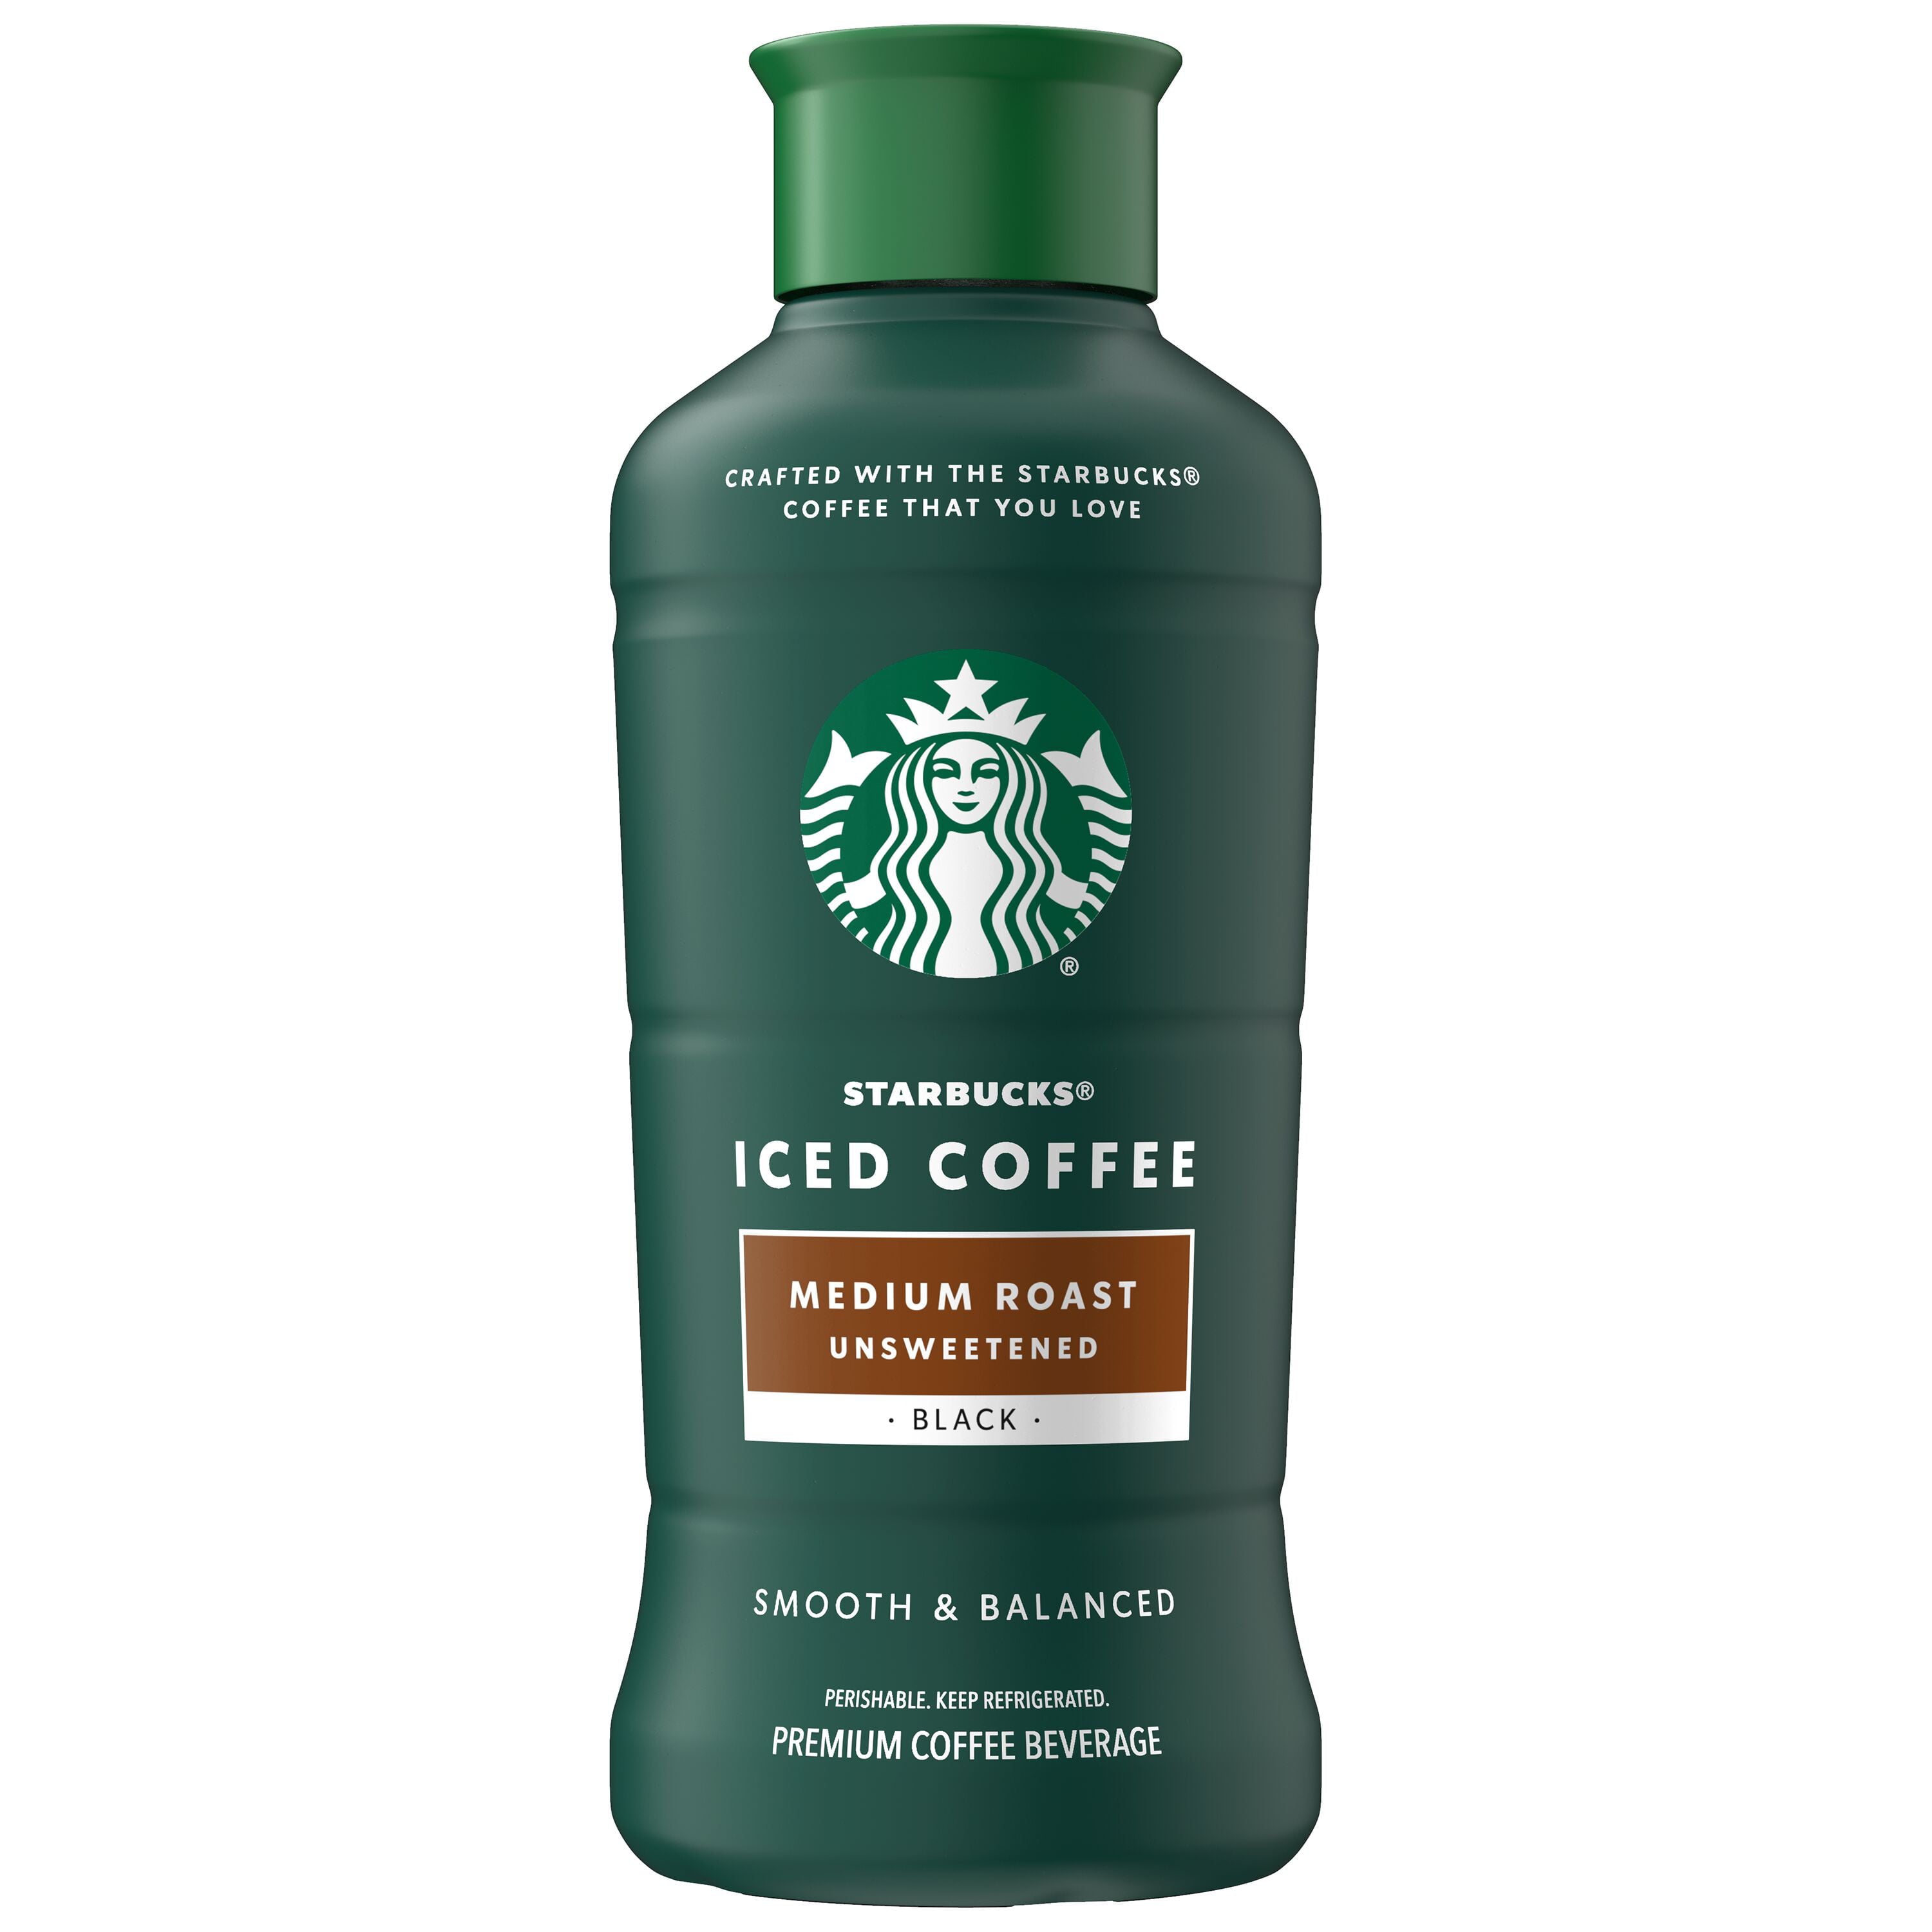 Starbucks Iced Coffee, Unsweetened Medium Roast, 48 fl oz